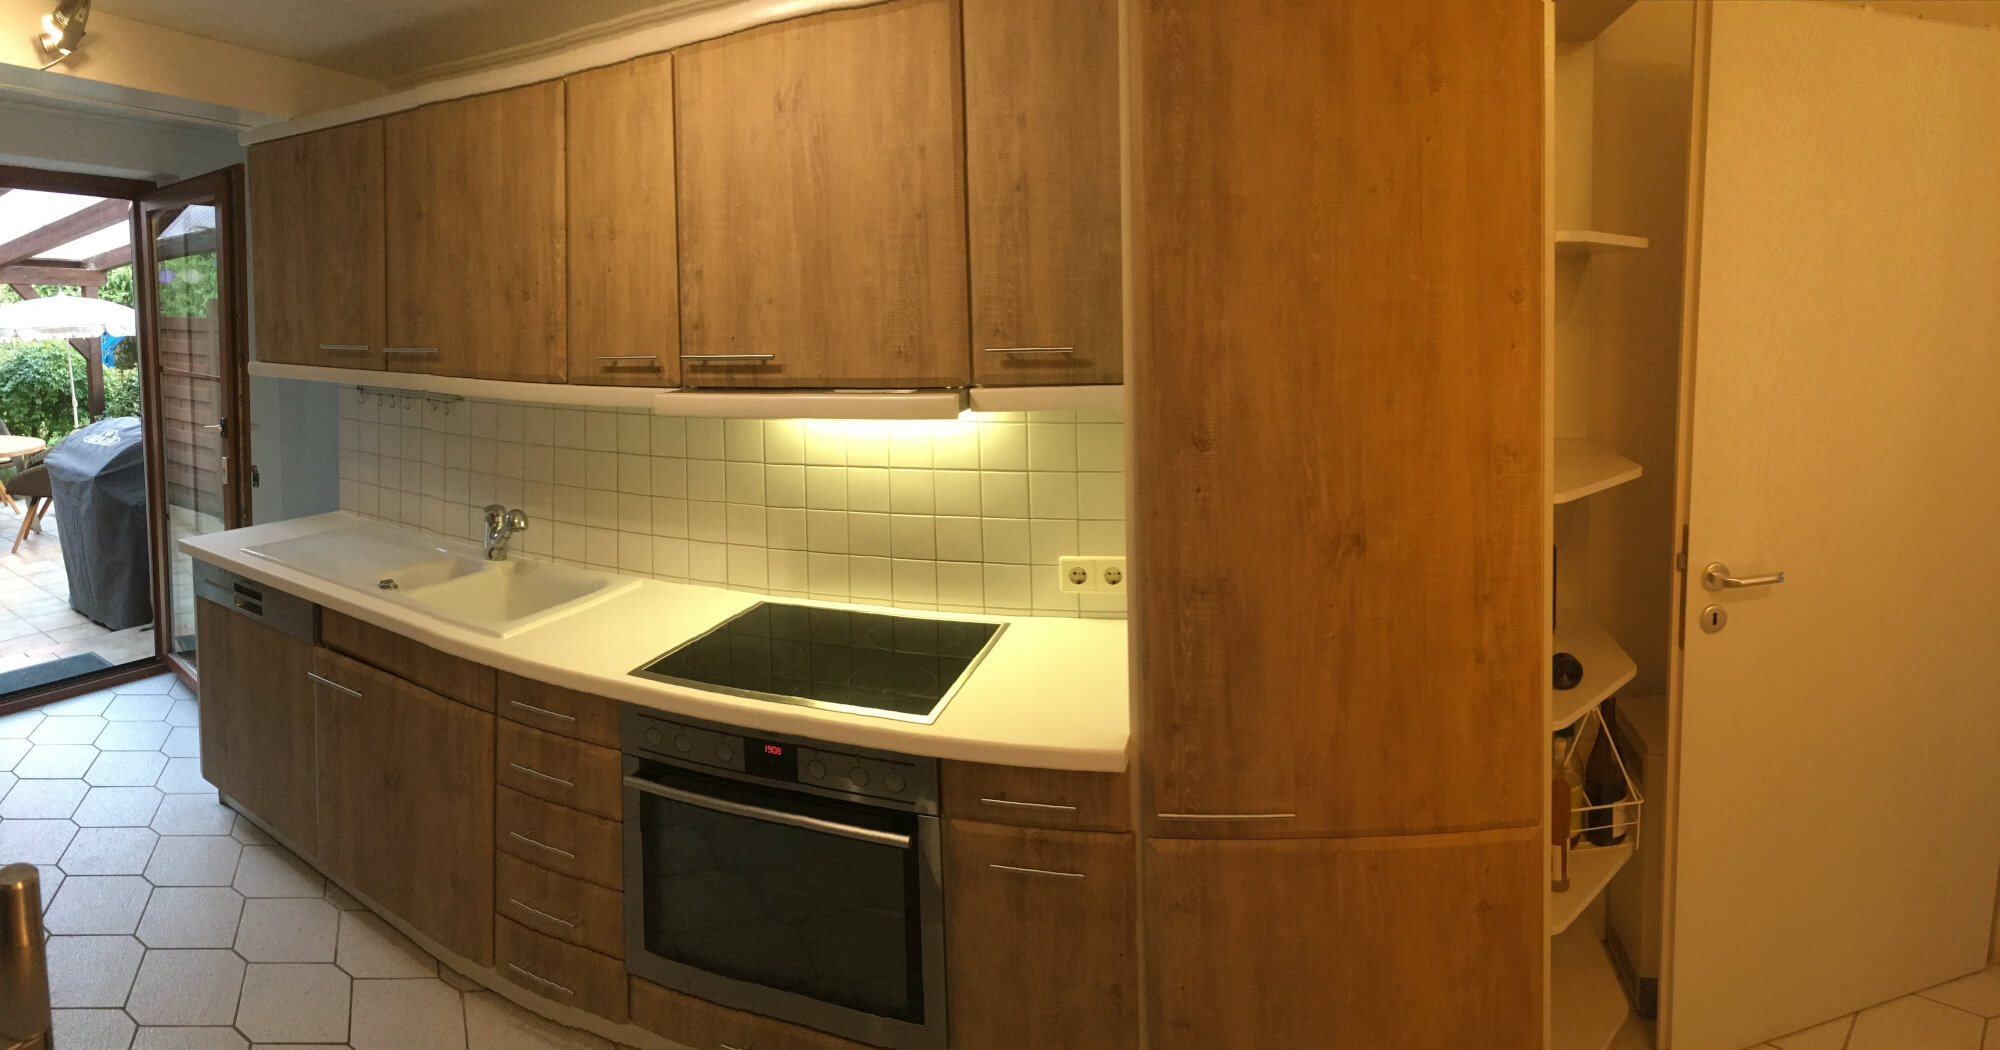 Küchenschränke folieren selbstklebende Folie Kueche Fronten Arbeitsplatte braun weiß PZ806 S115 06